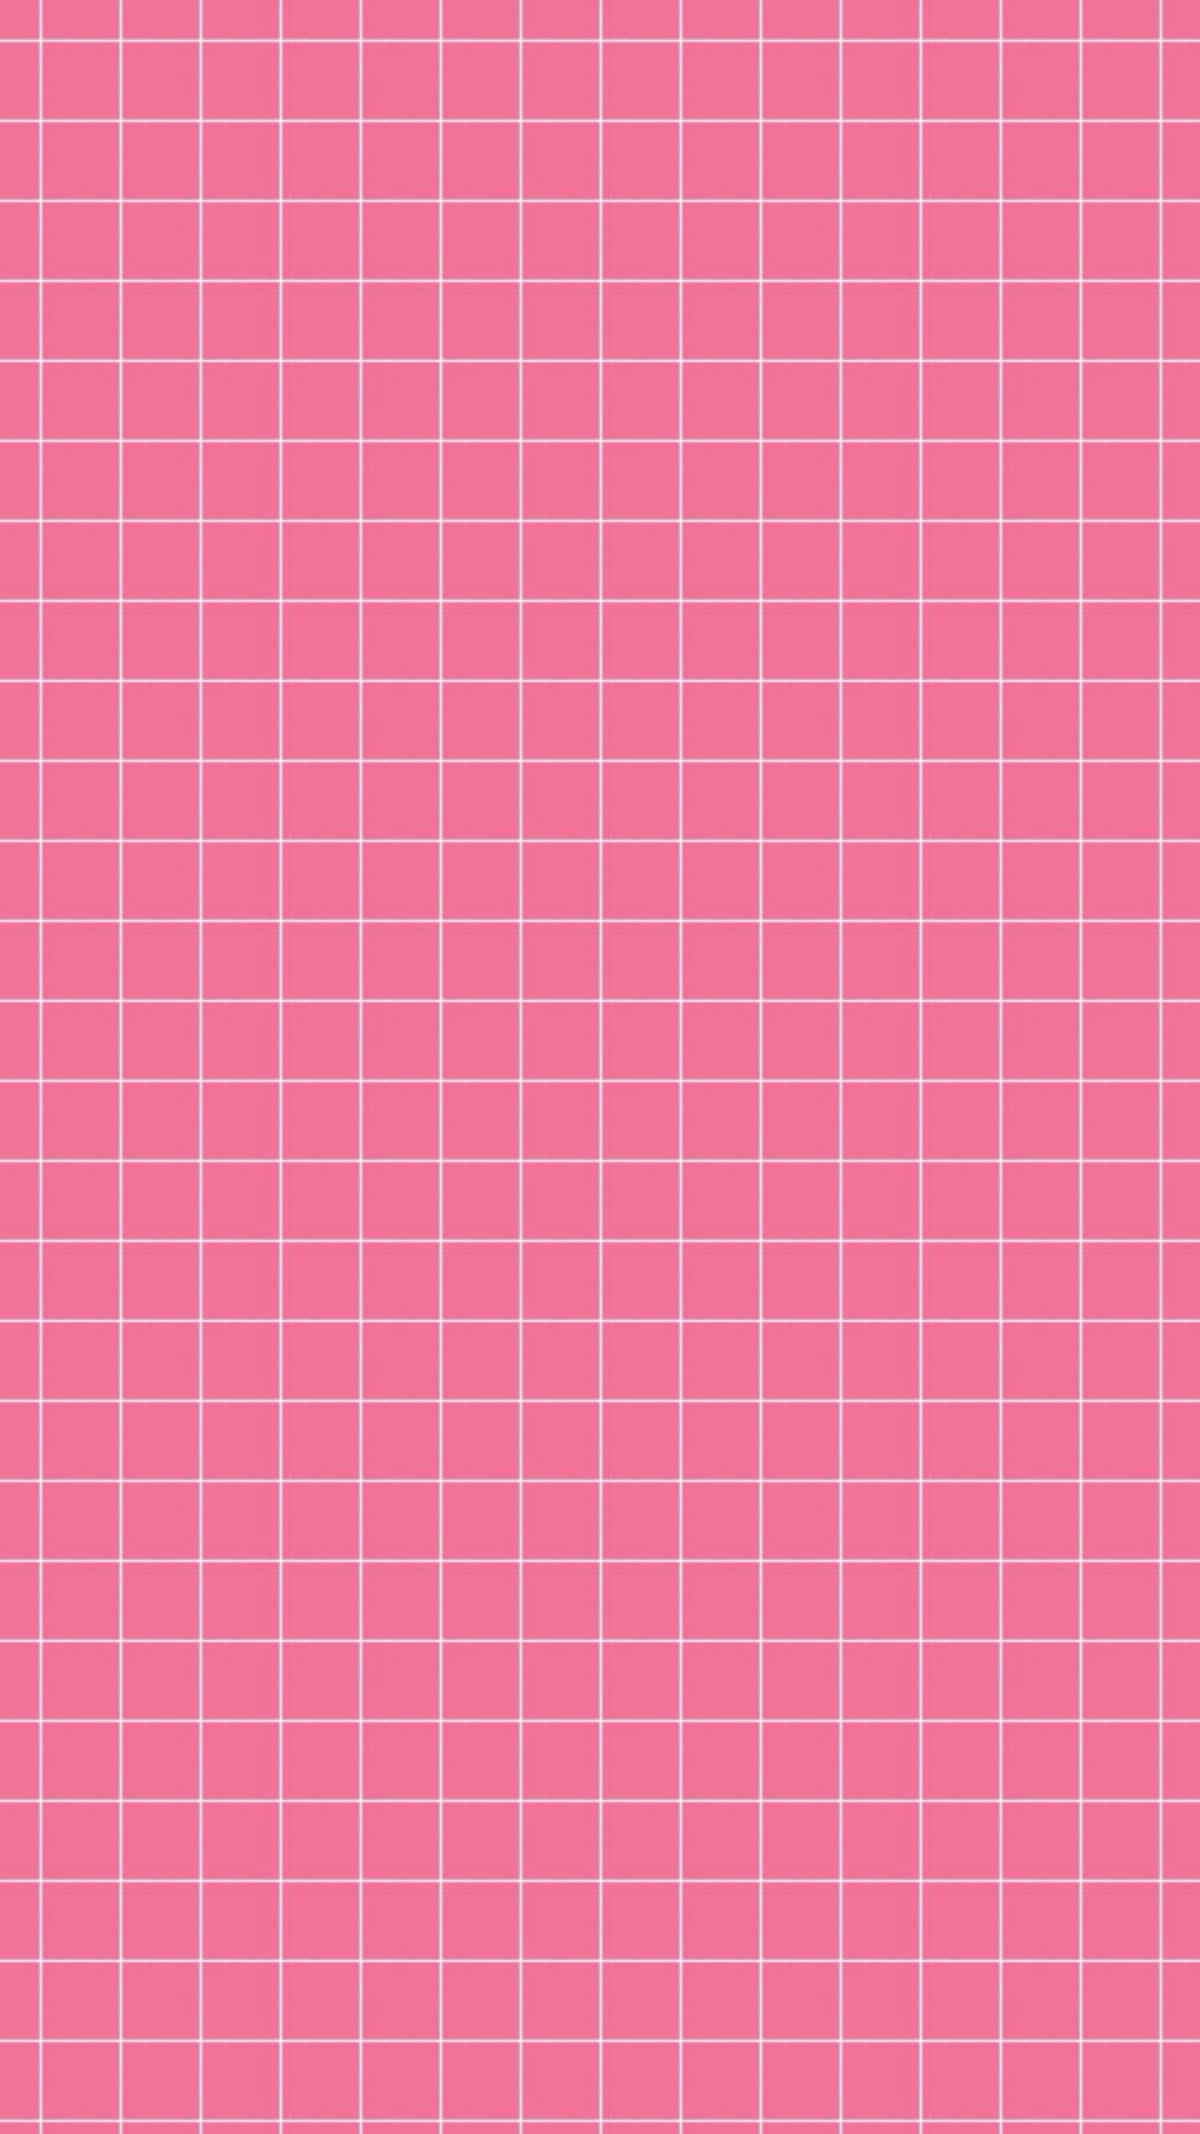 粉色格子手机壁纸图片